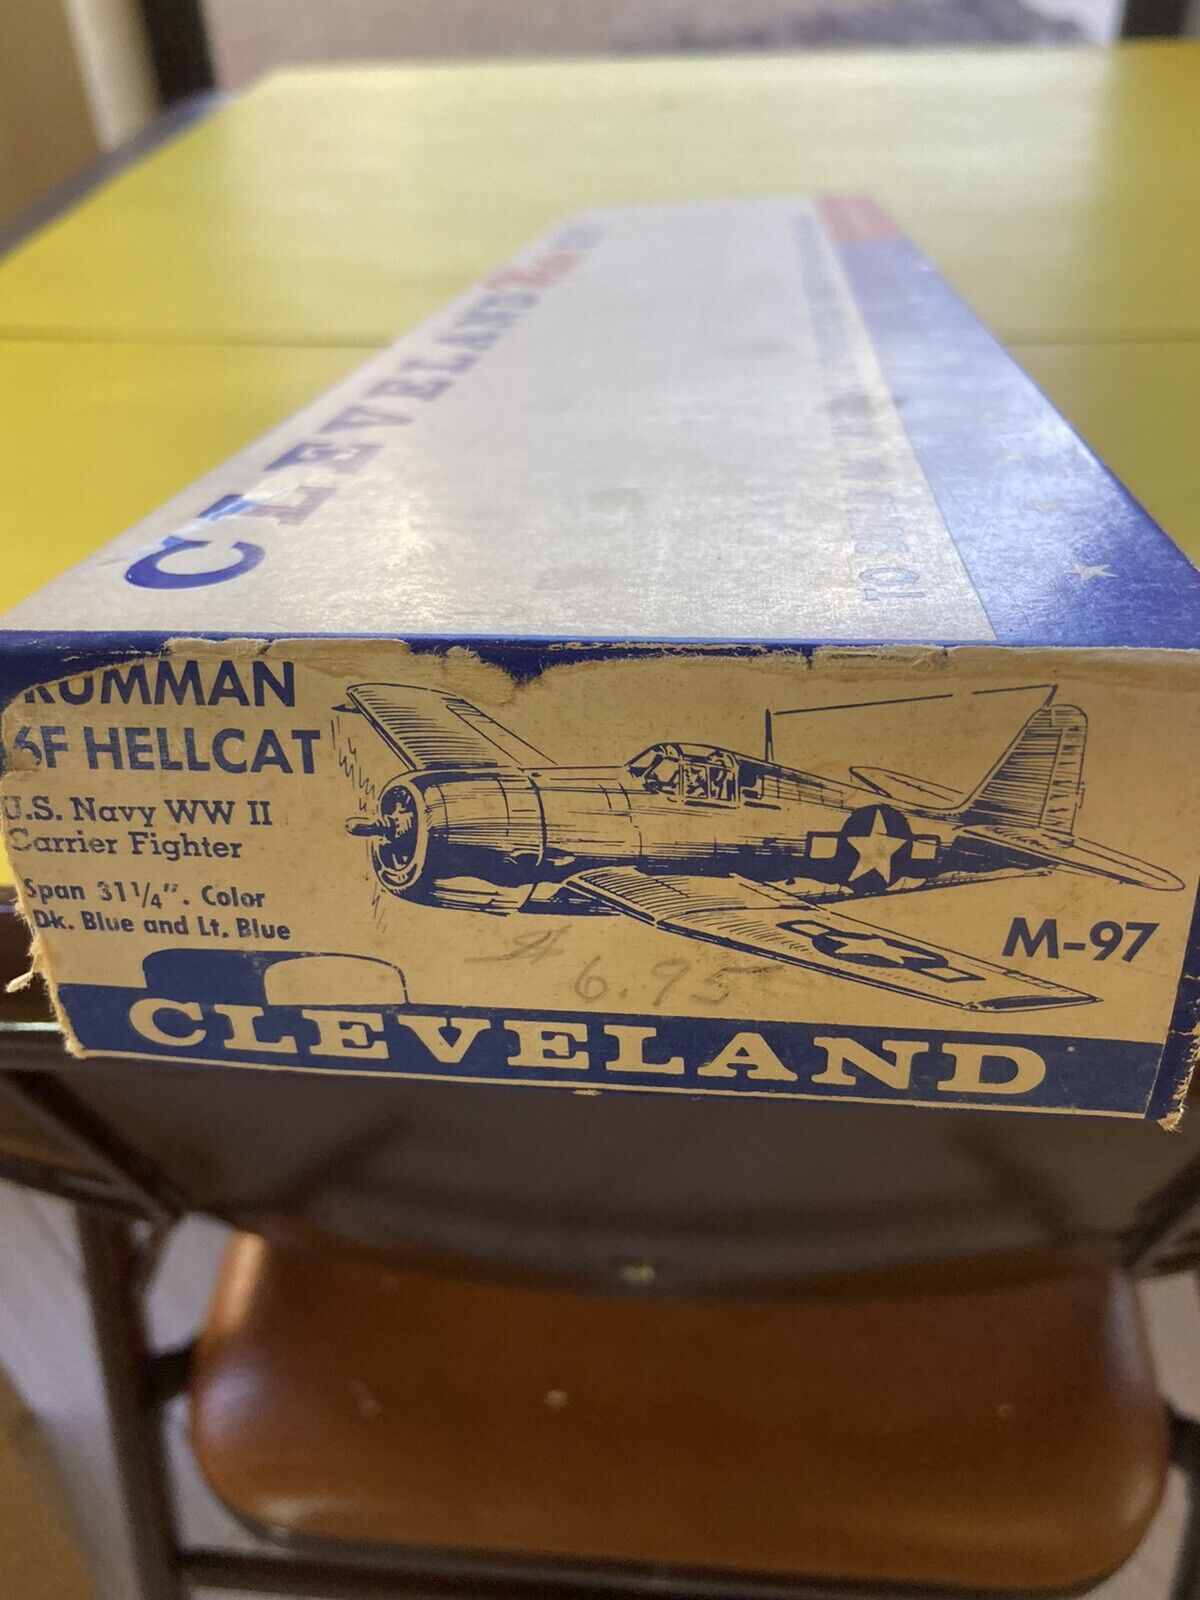 Cleveland Grumman F6F Hellcat Kit M-97 Master Kit WWII U.S. Navy 1944